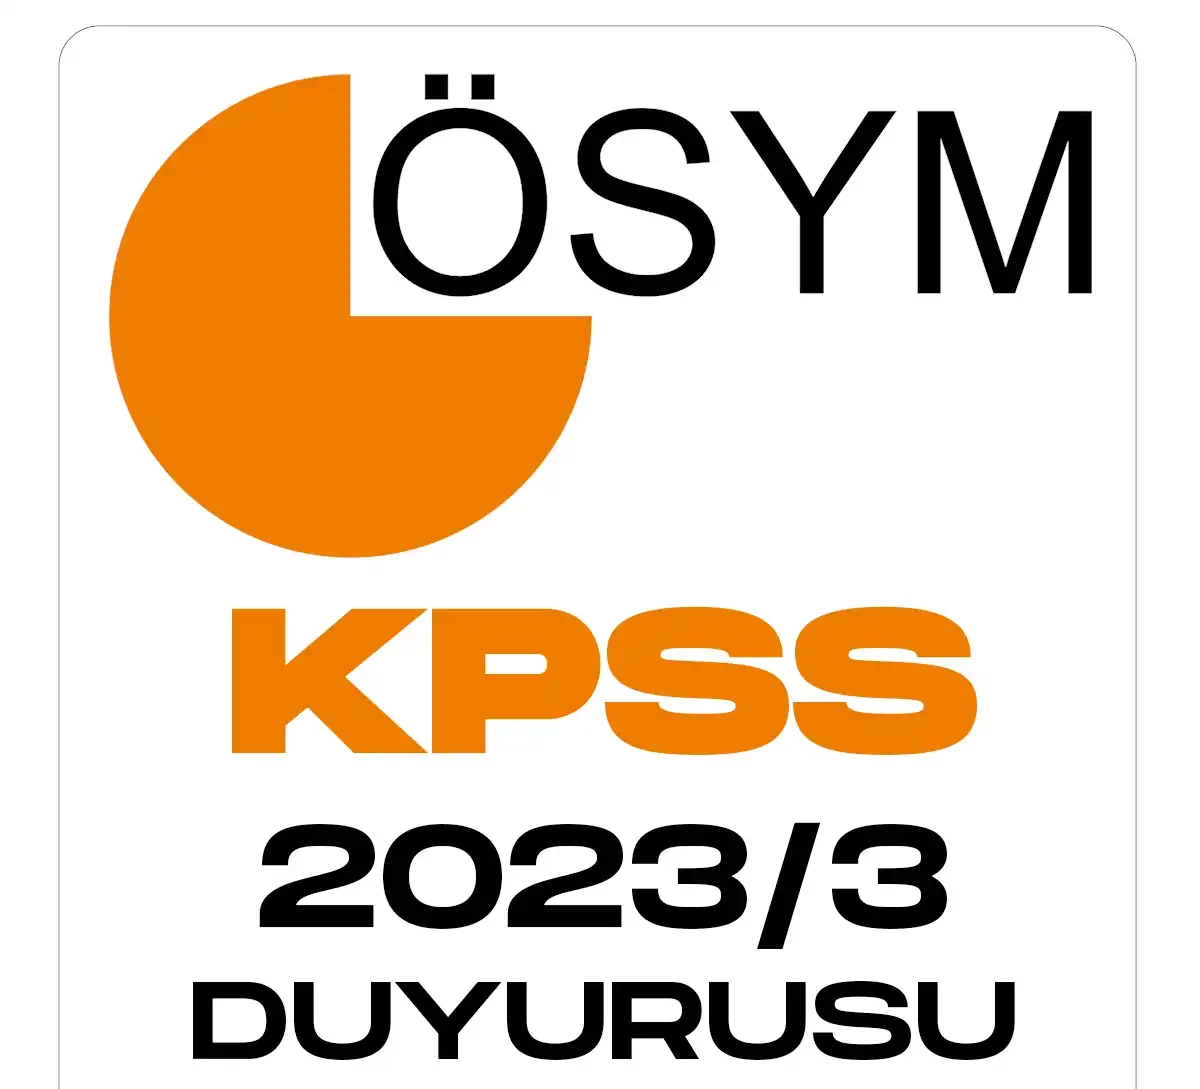 KPSS 2023 3 tercih sonuçları duyurusu geldi.